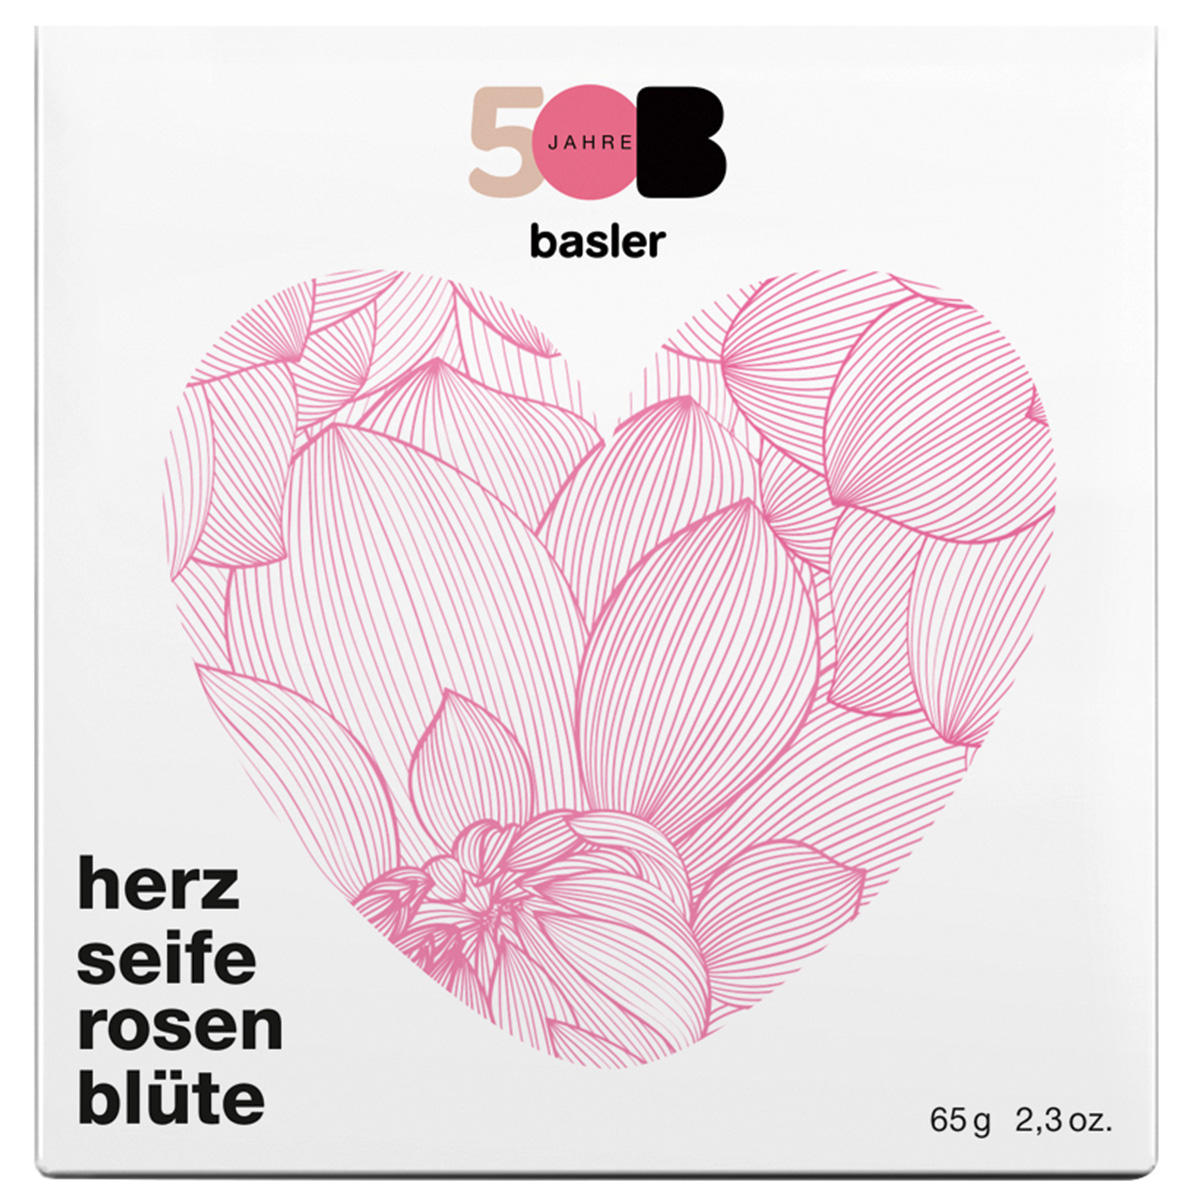 KLAR x Basler Herzseife Rosenblüte Jubiläumsedition 65 g - 2